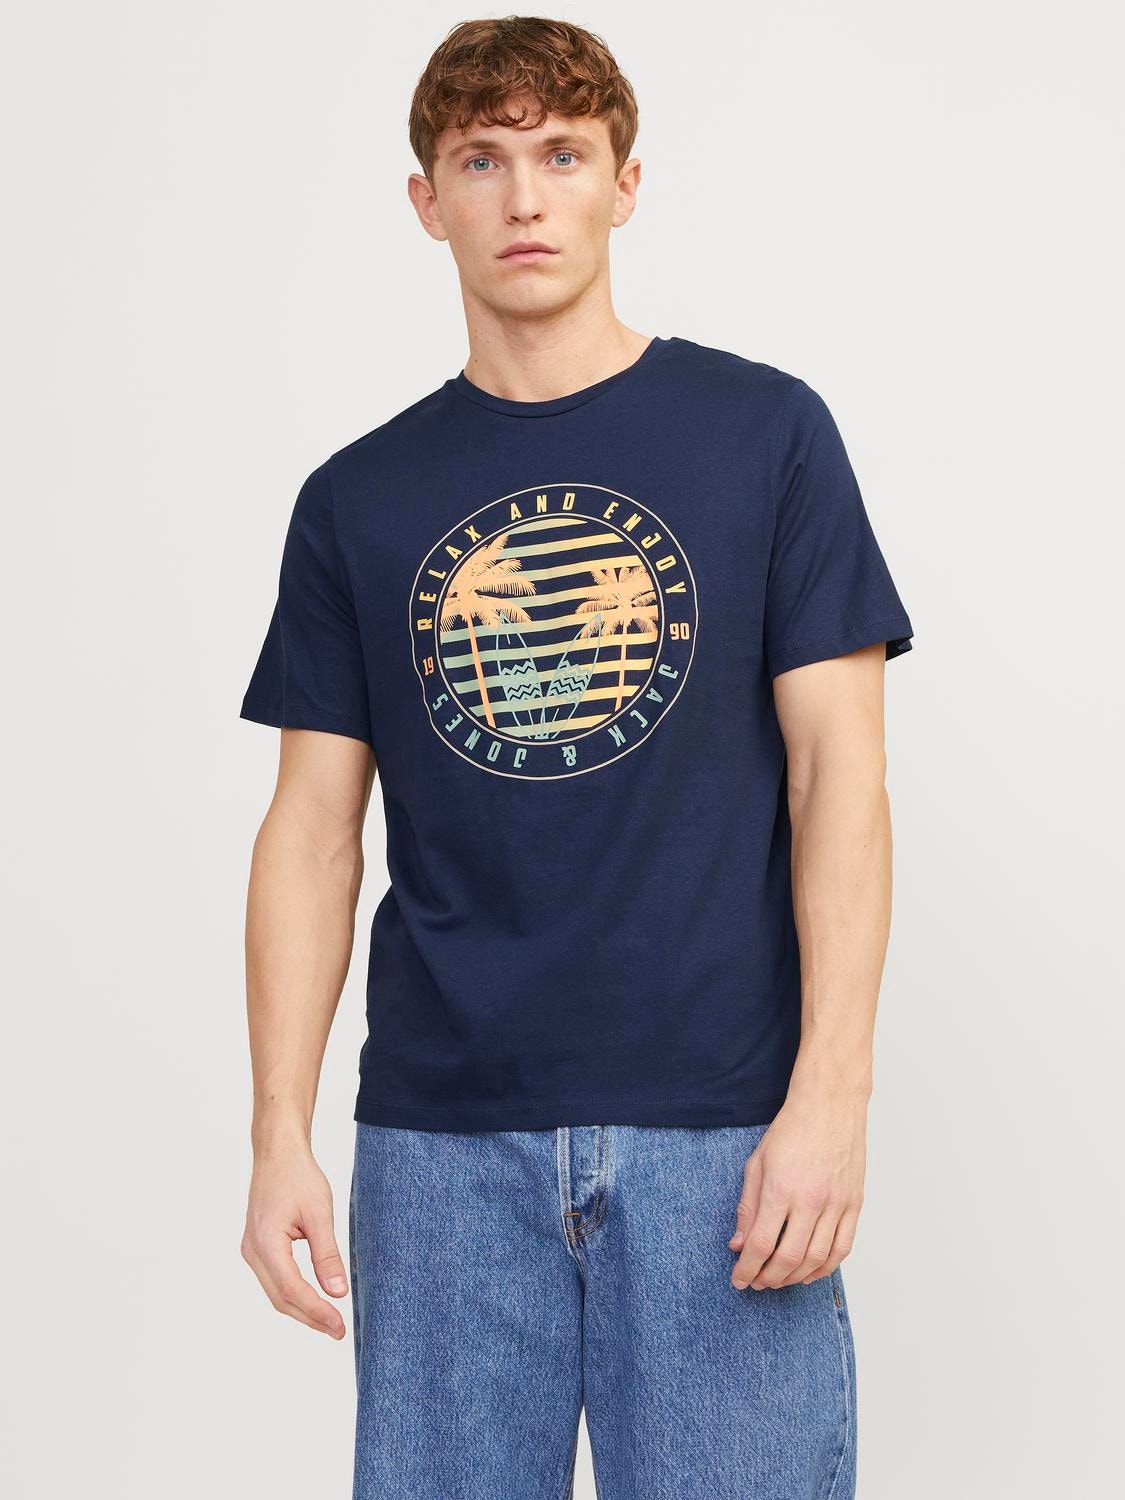 Jack & Jones Bedrukt Ronde hals T-shirt -Navy Blazer - 12249266